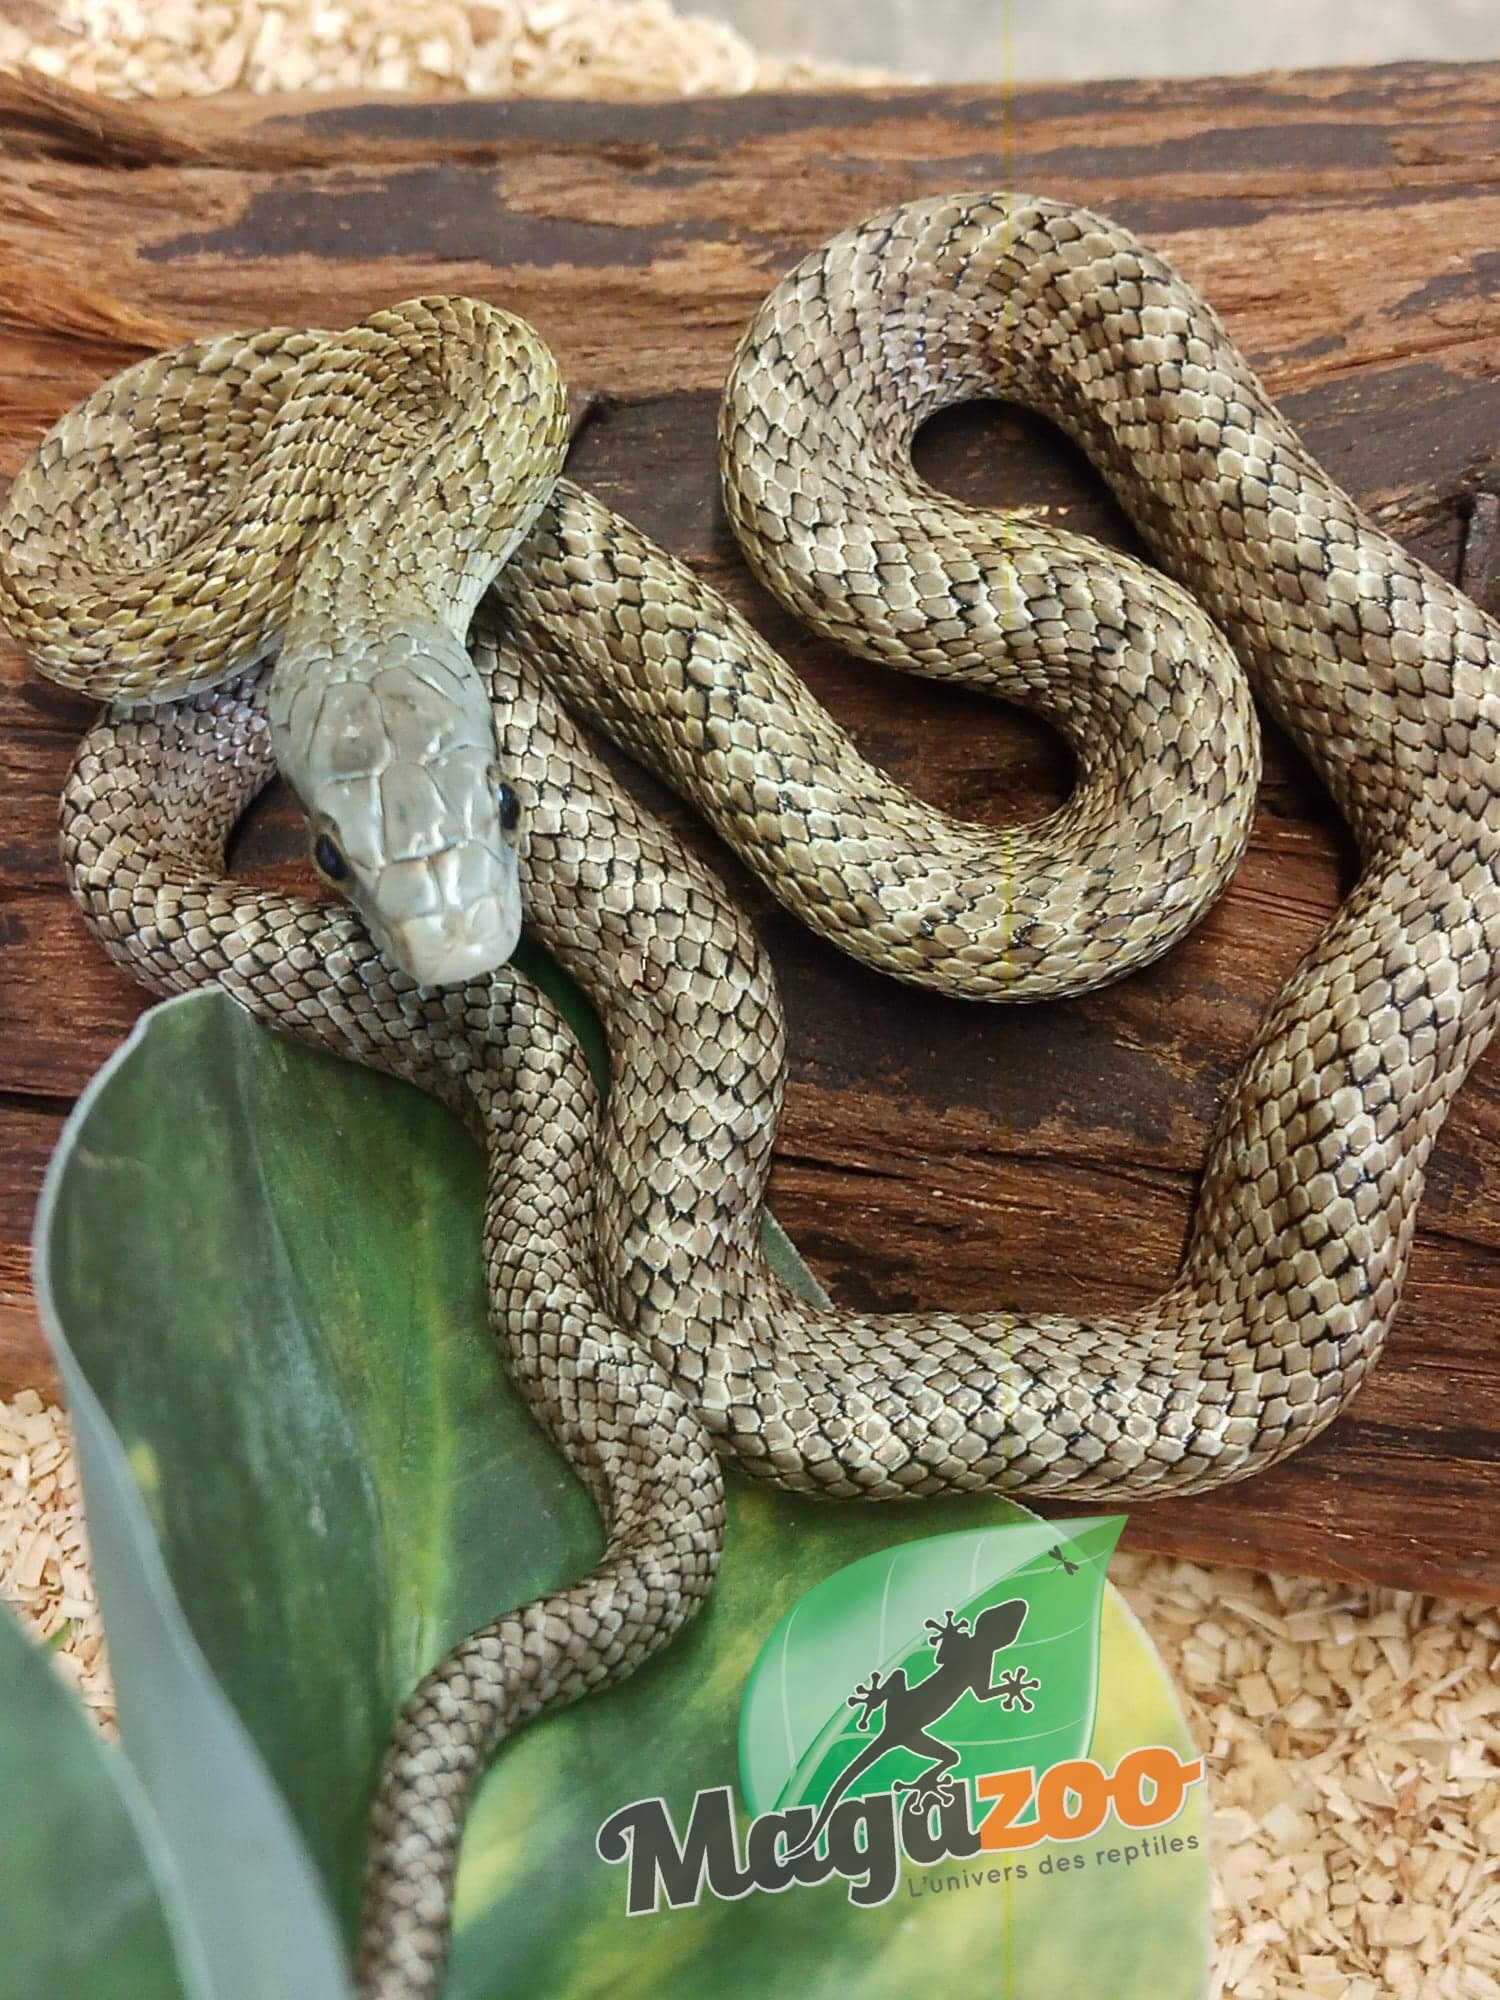 Magazoo Kunashir rat snake (Baby female #1)